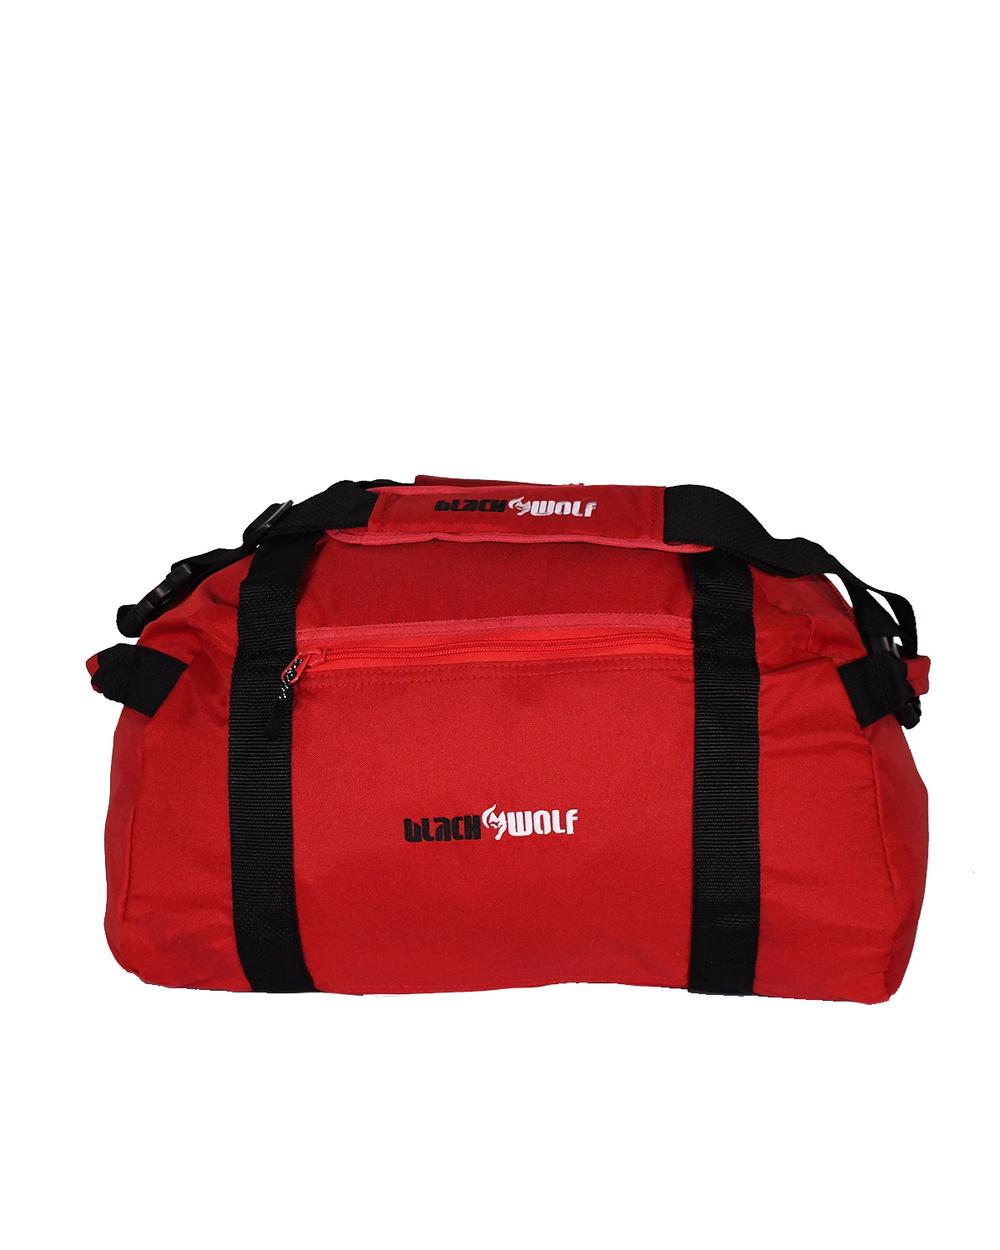 BlackWolf DufflePak Backpack (True Red) - 50x25x20cm | Buy online at ...